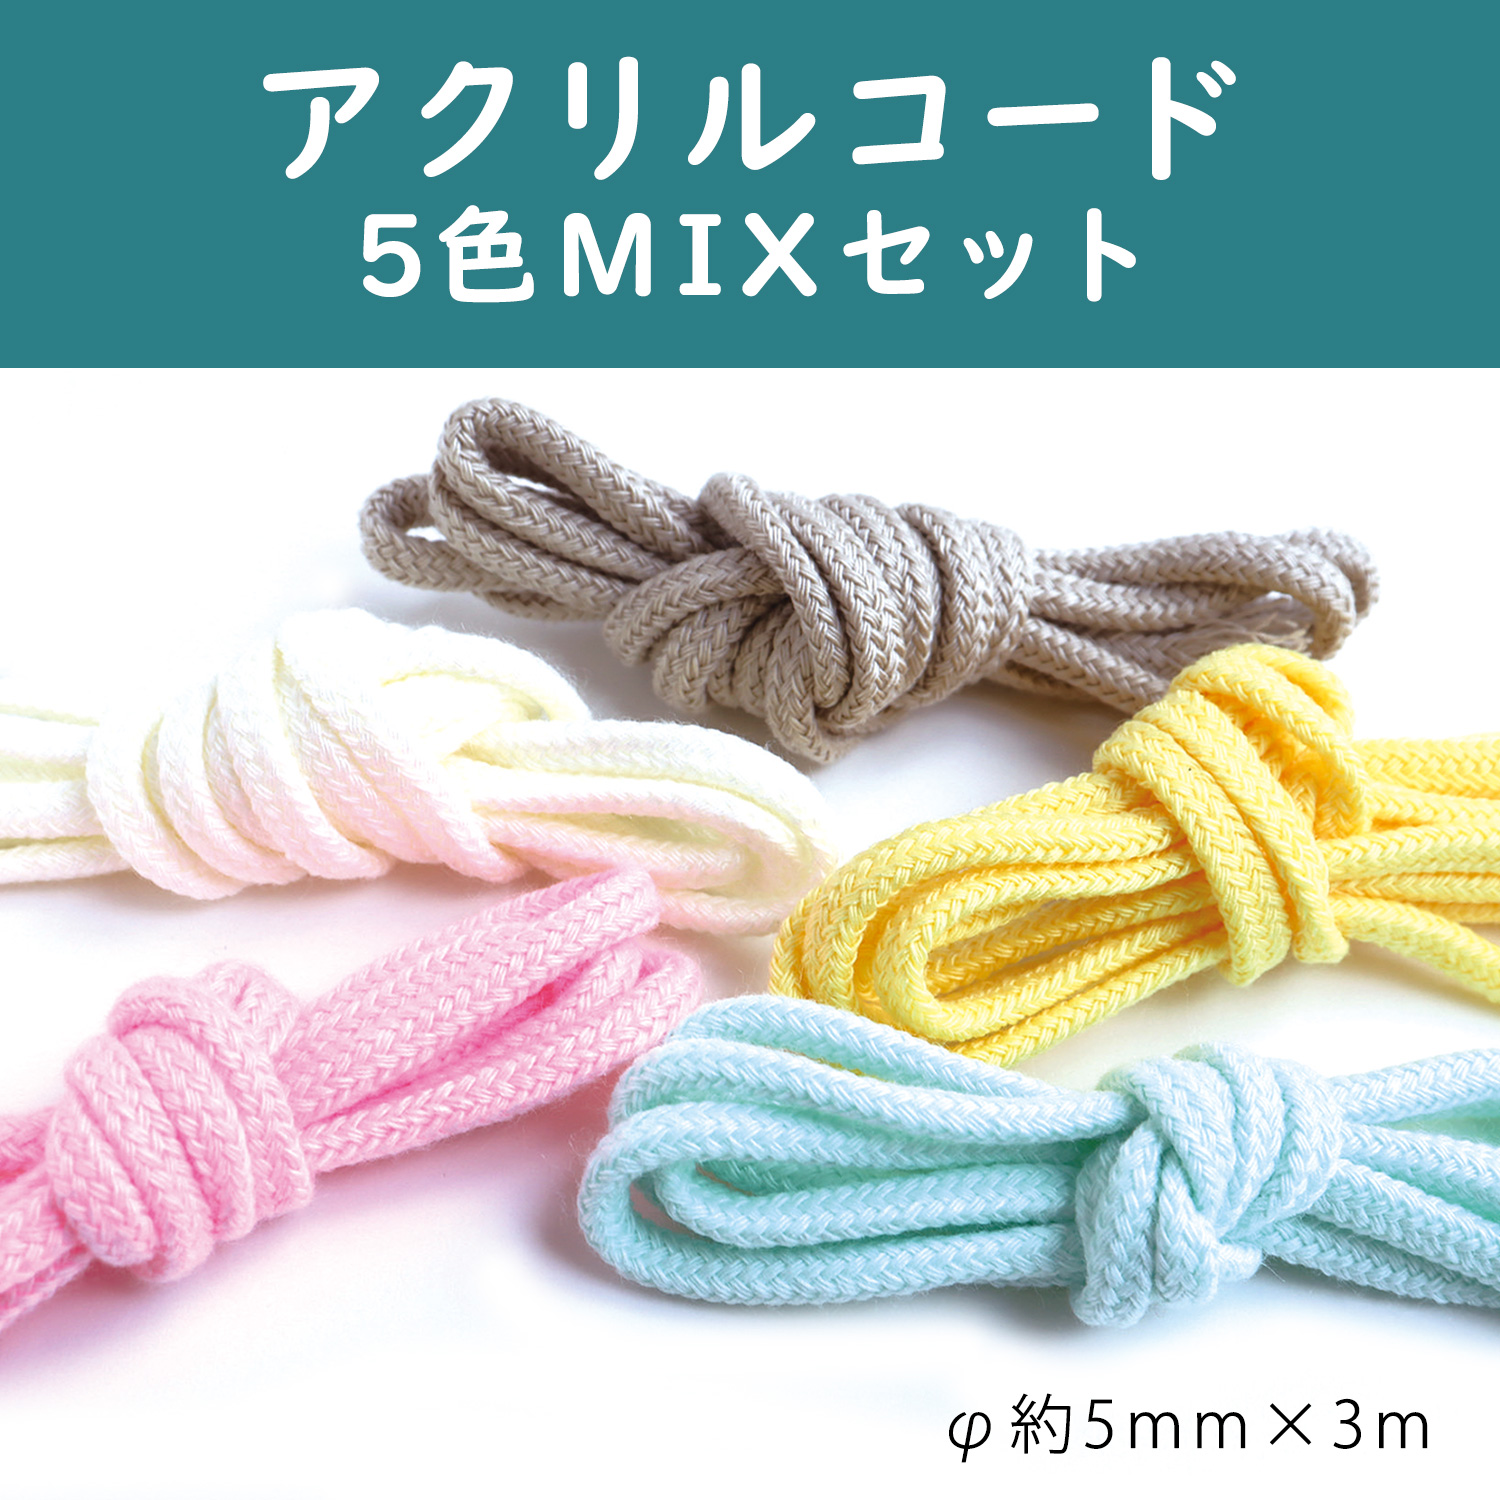 DY200-3M-MIX acrylic cord 5color MIX set"", φ5mm x 3m （set）